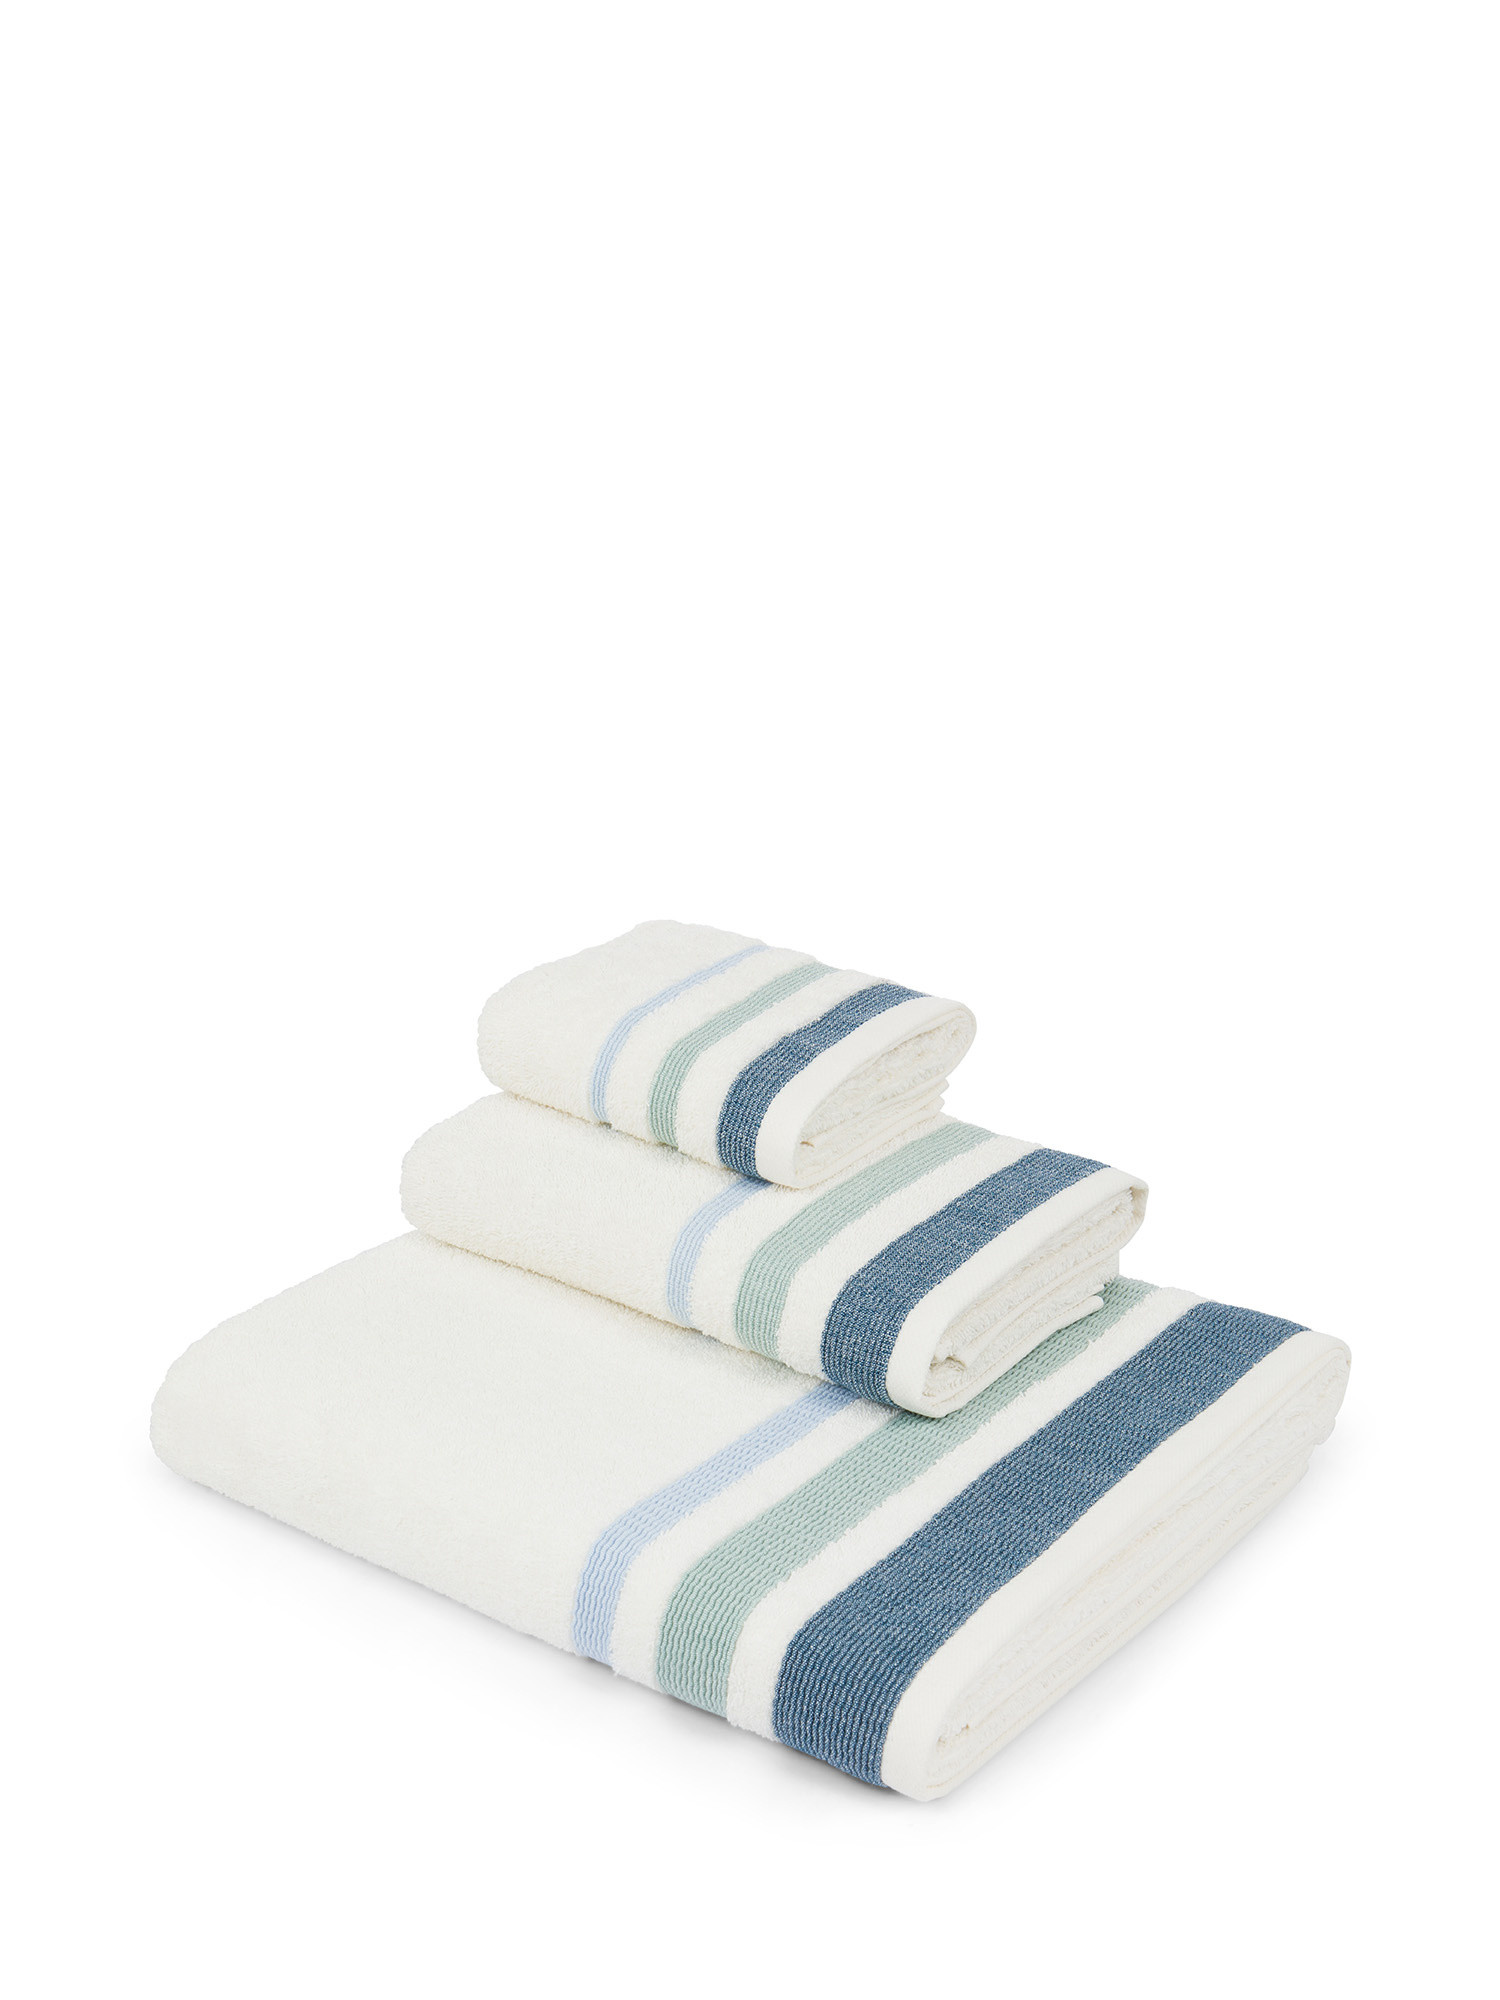 Asciugamano in spugna di cotone con bordo jacquard goffrato, Bianco, large image number 0